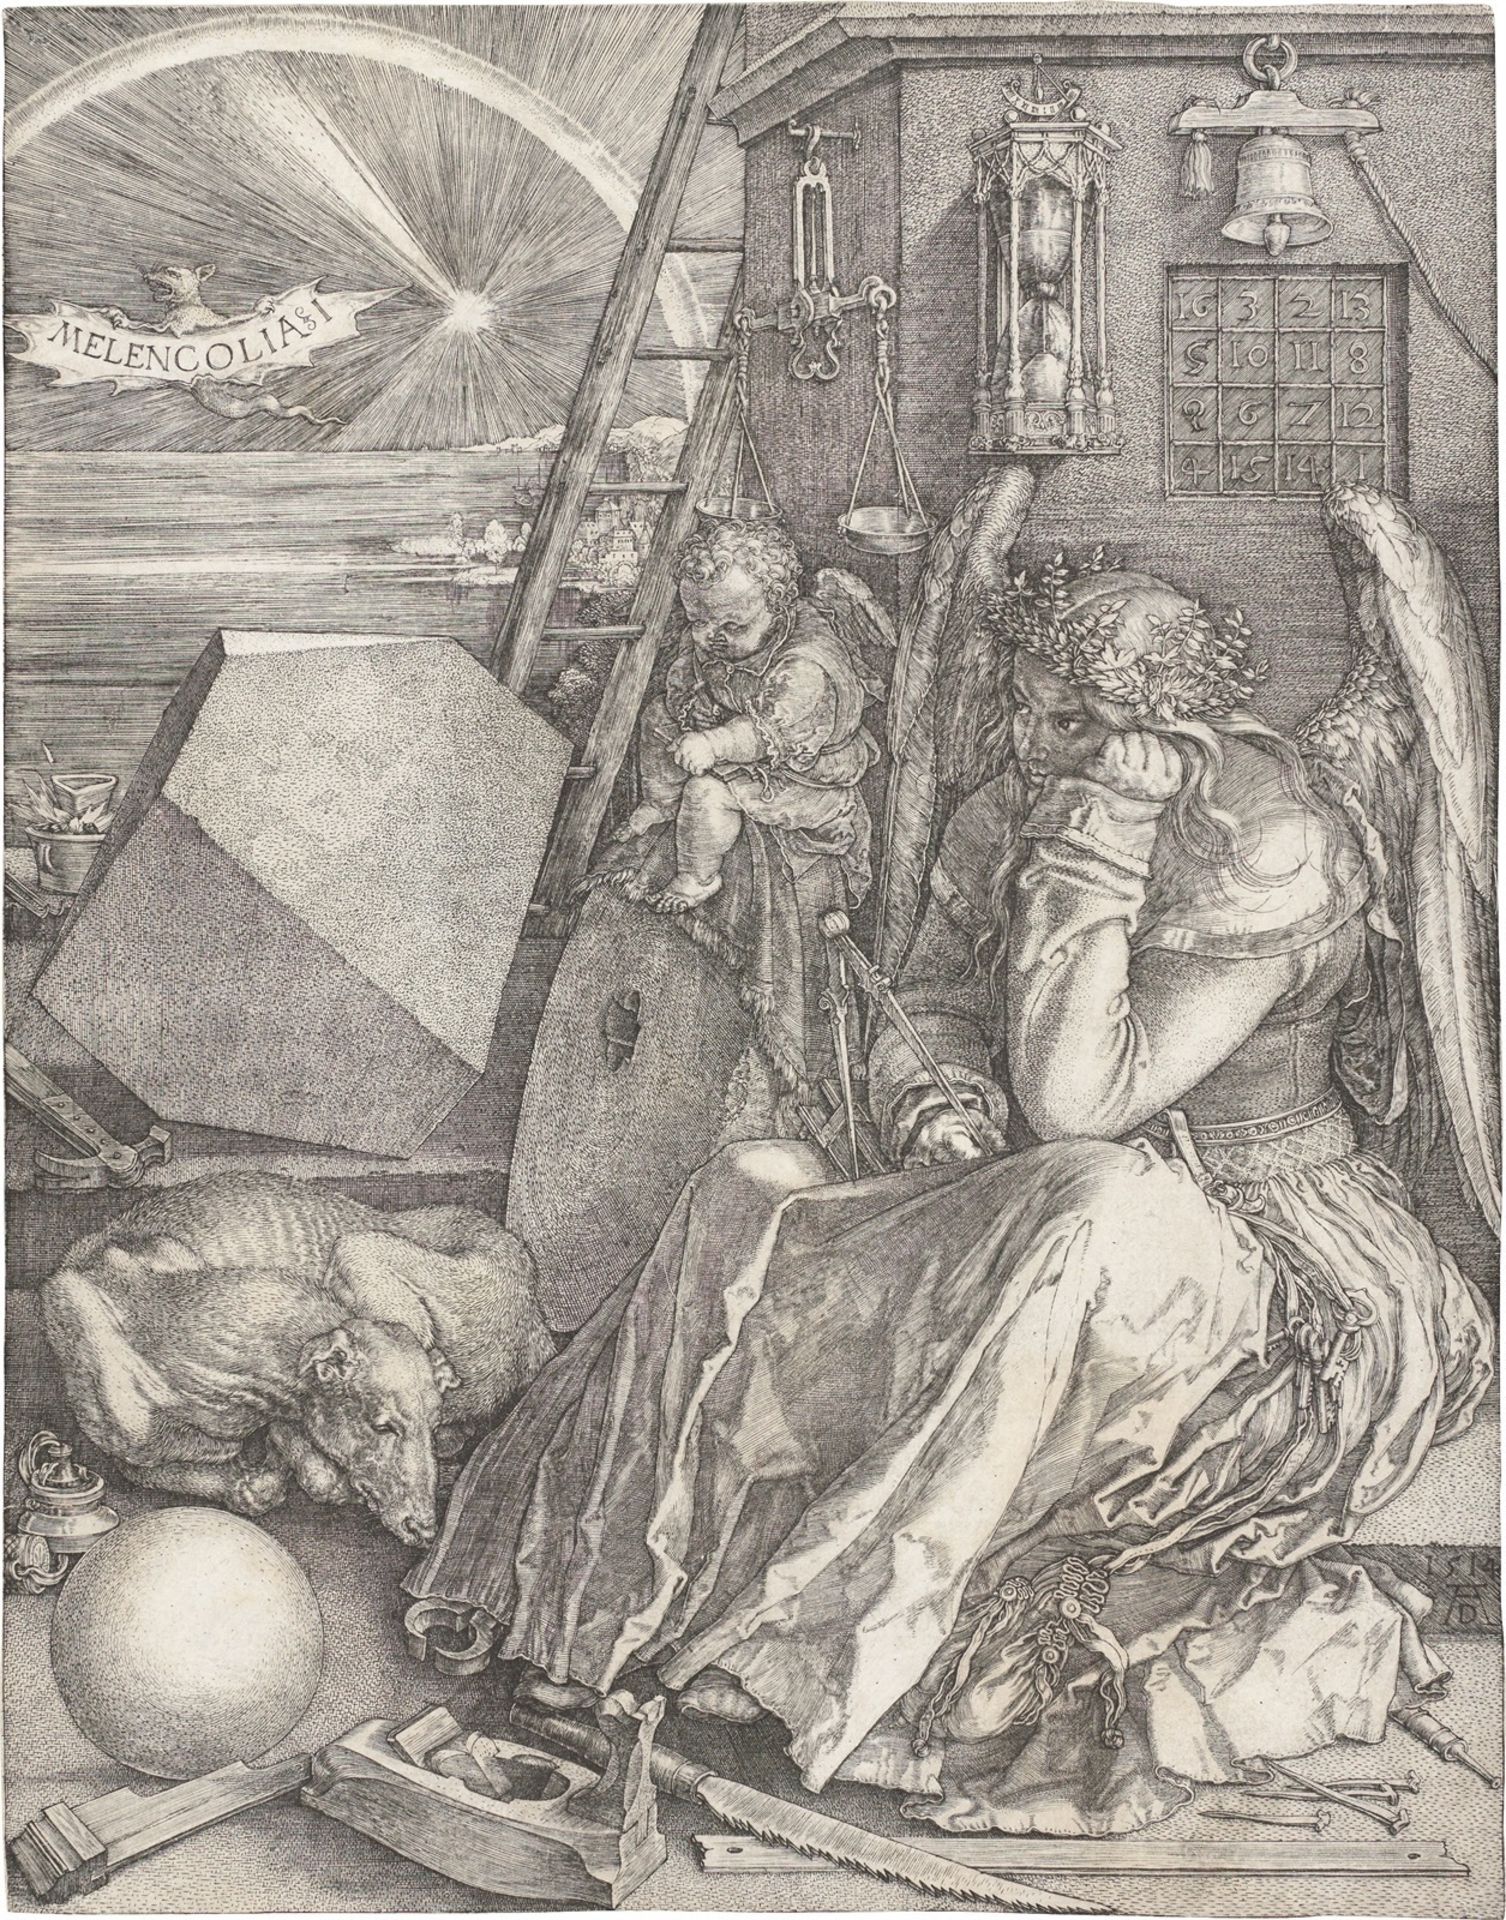 Albrecht Dürer. ”Melencolia I”. 1514